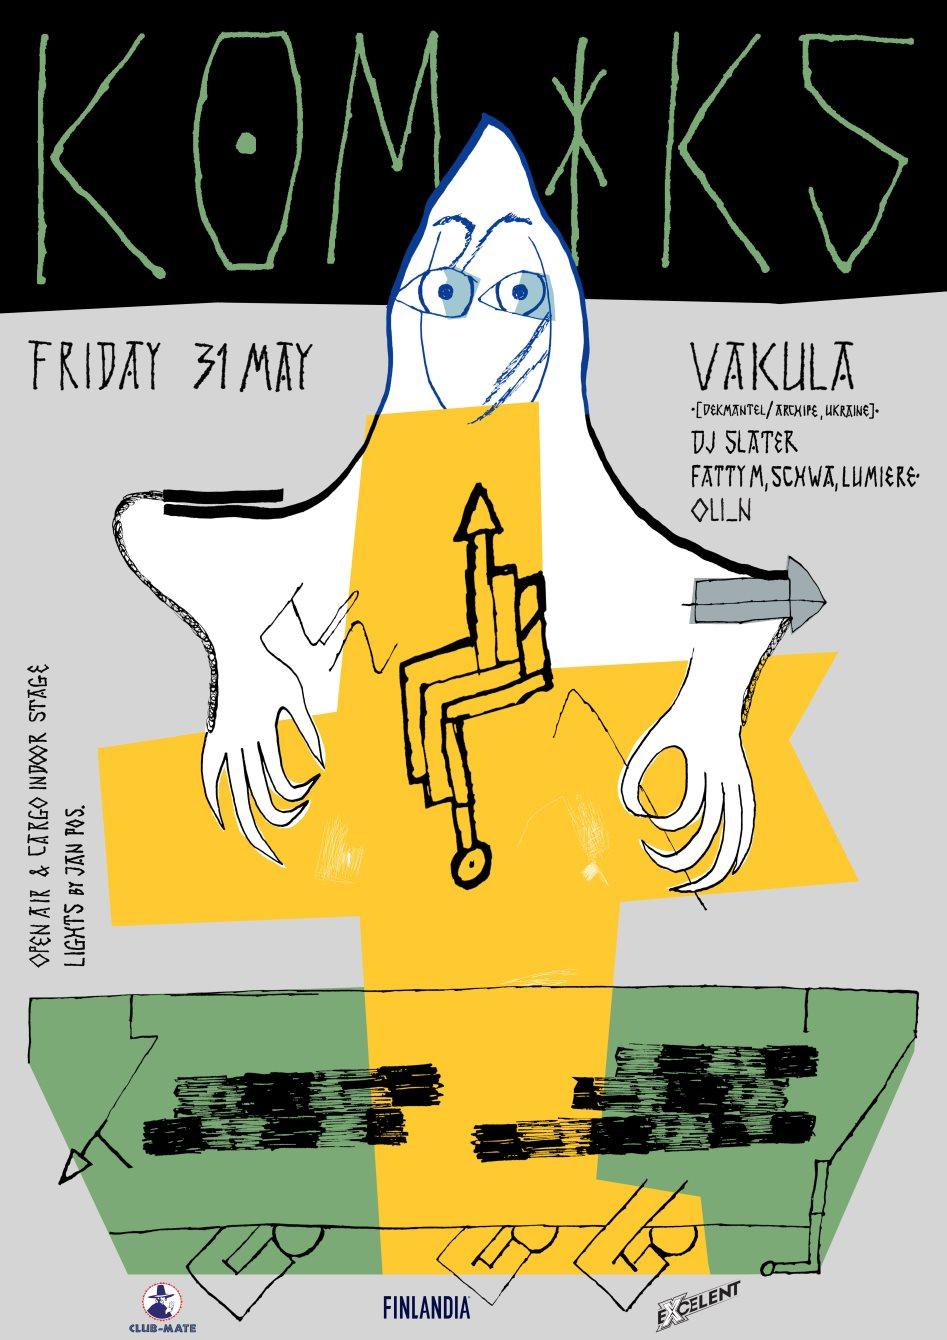 Komiks with Vakula (Dekmantel, Firecracker) - Flyer front